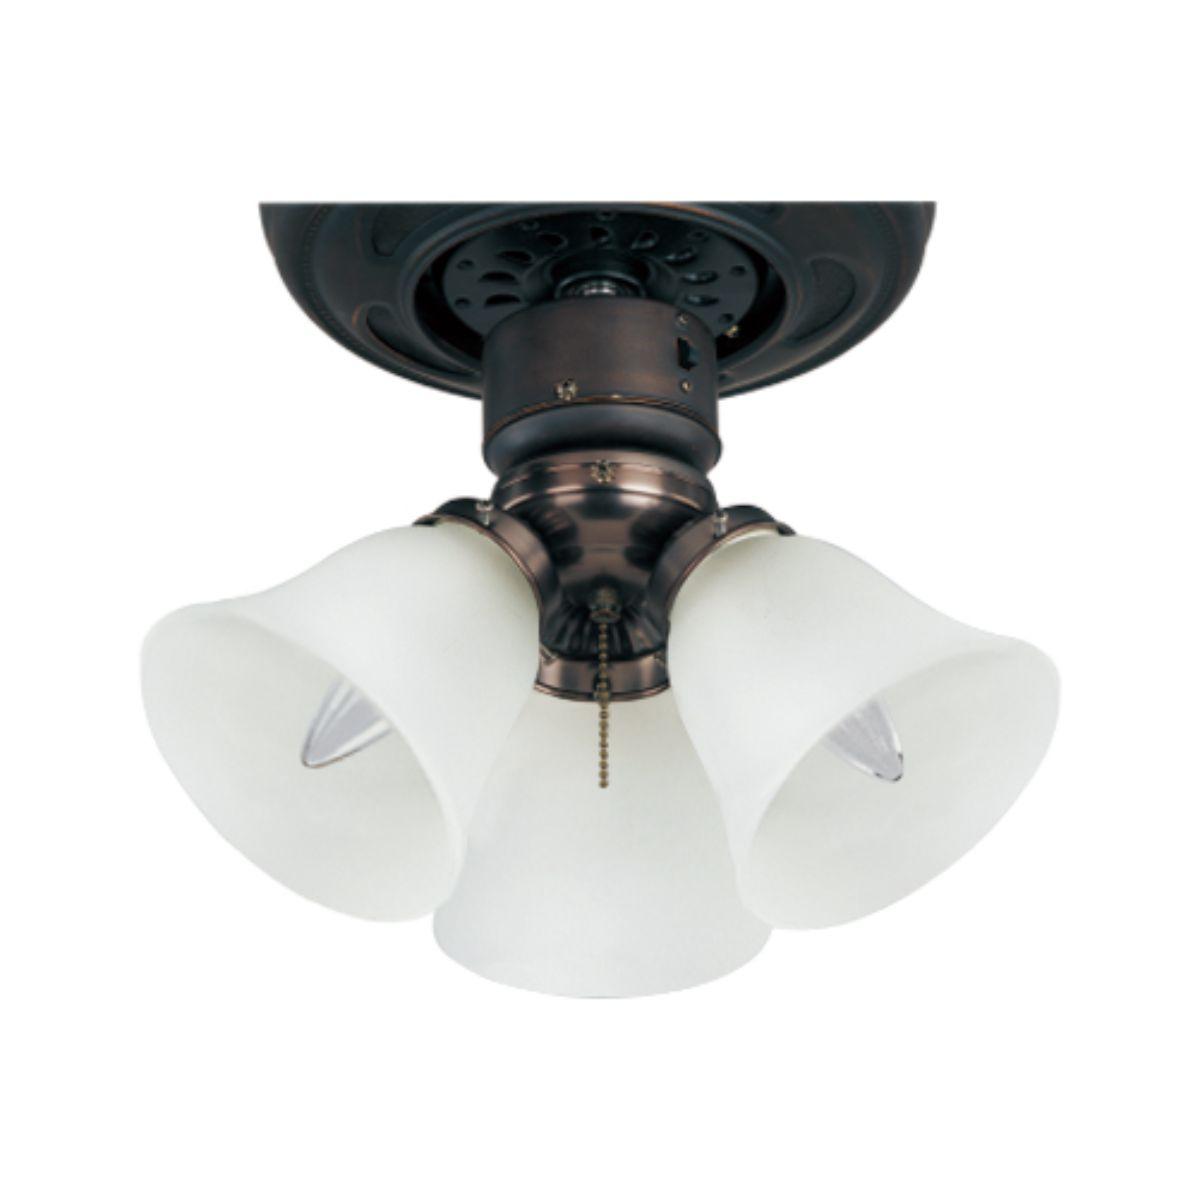 12 Inch 3 Light LED Ceiling Fan Light Kit